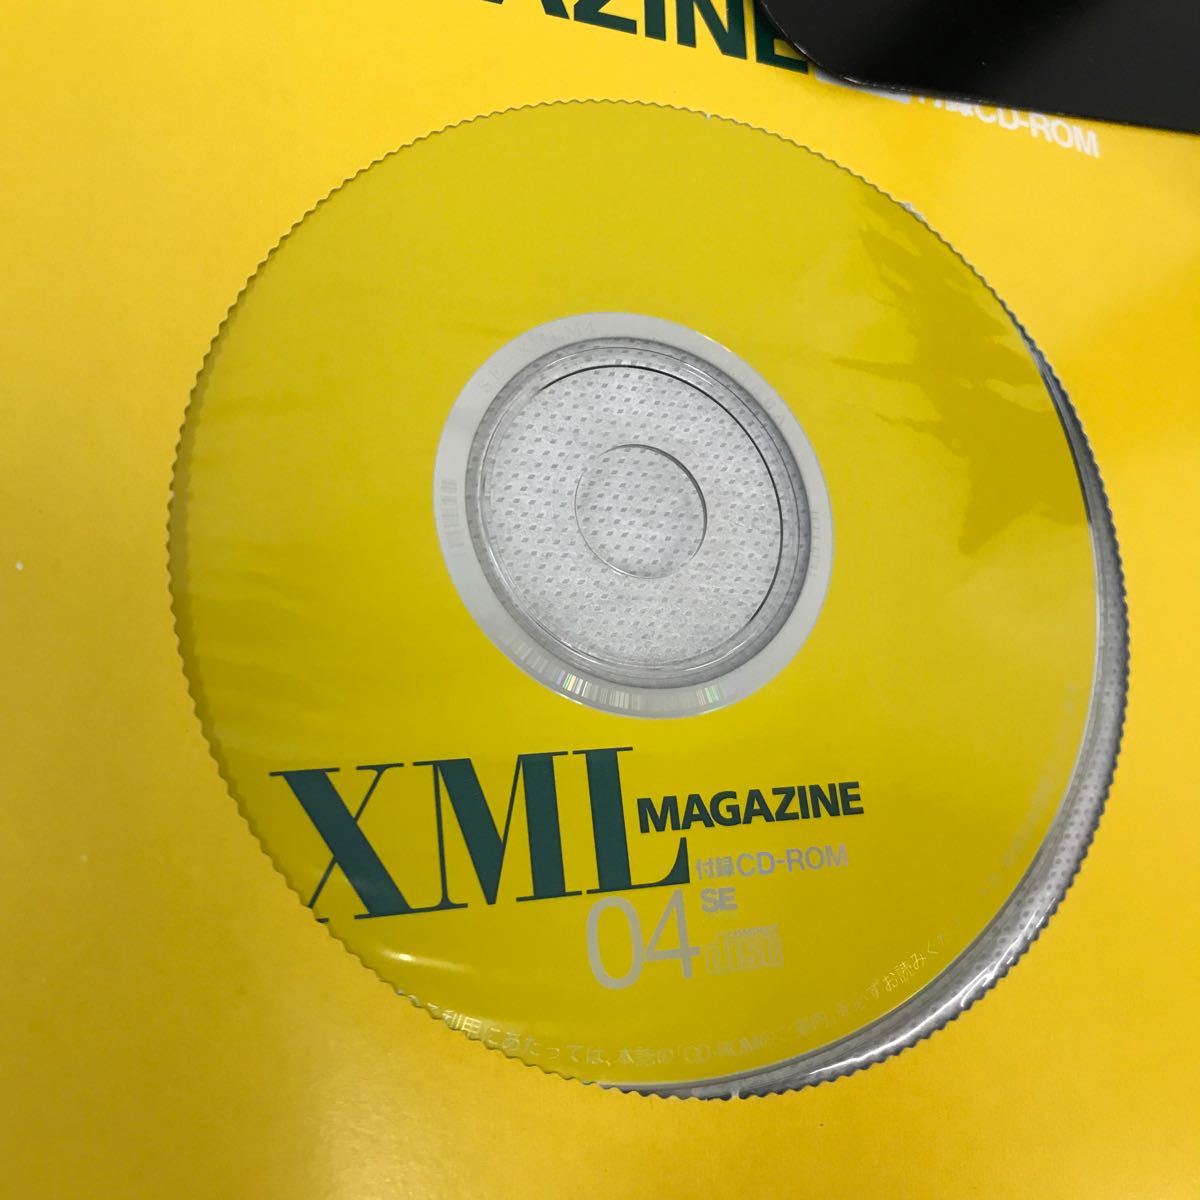 E61-184 XML MAGAZINE 2001.04 XML данные магазин полное руководство XML технология стандарт .. на данный момент др. 2001 год 4 месяц 1 день выпуск CD-ROM имеется 